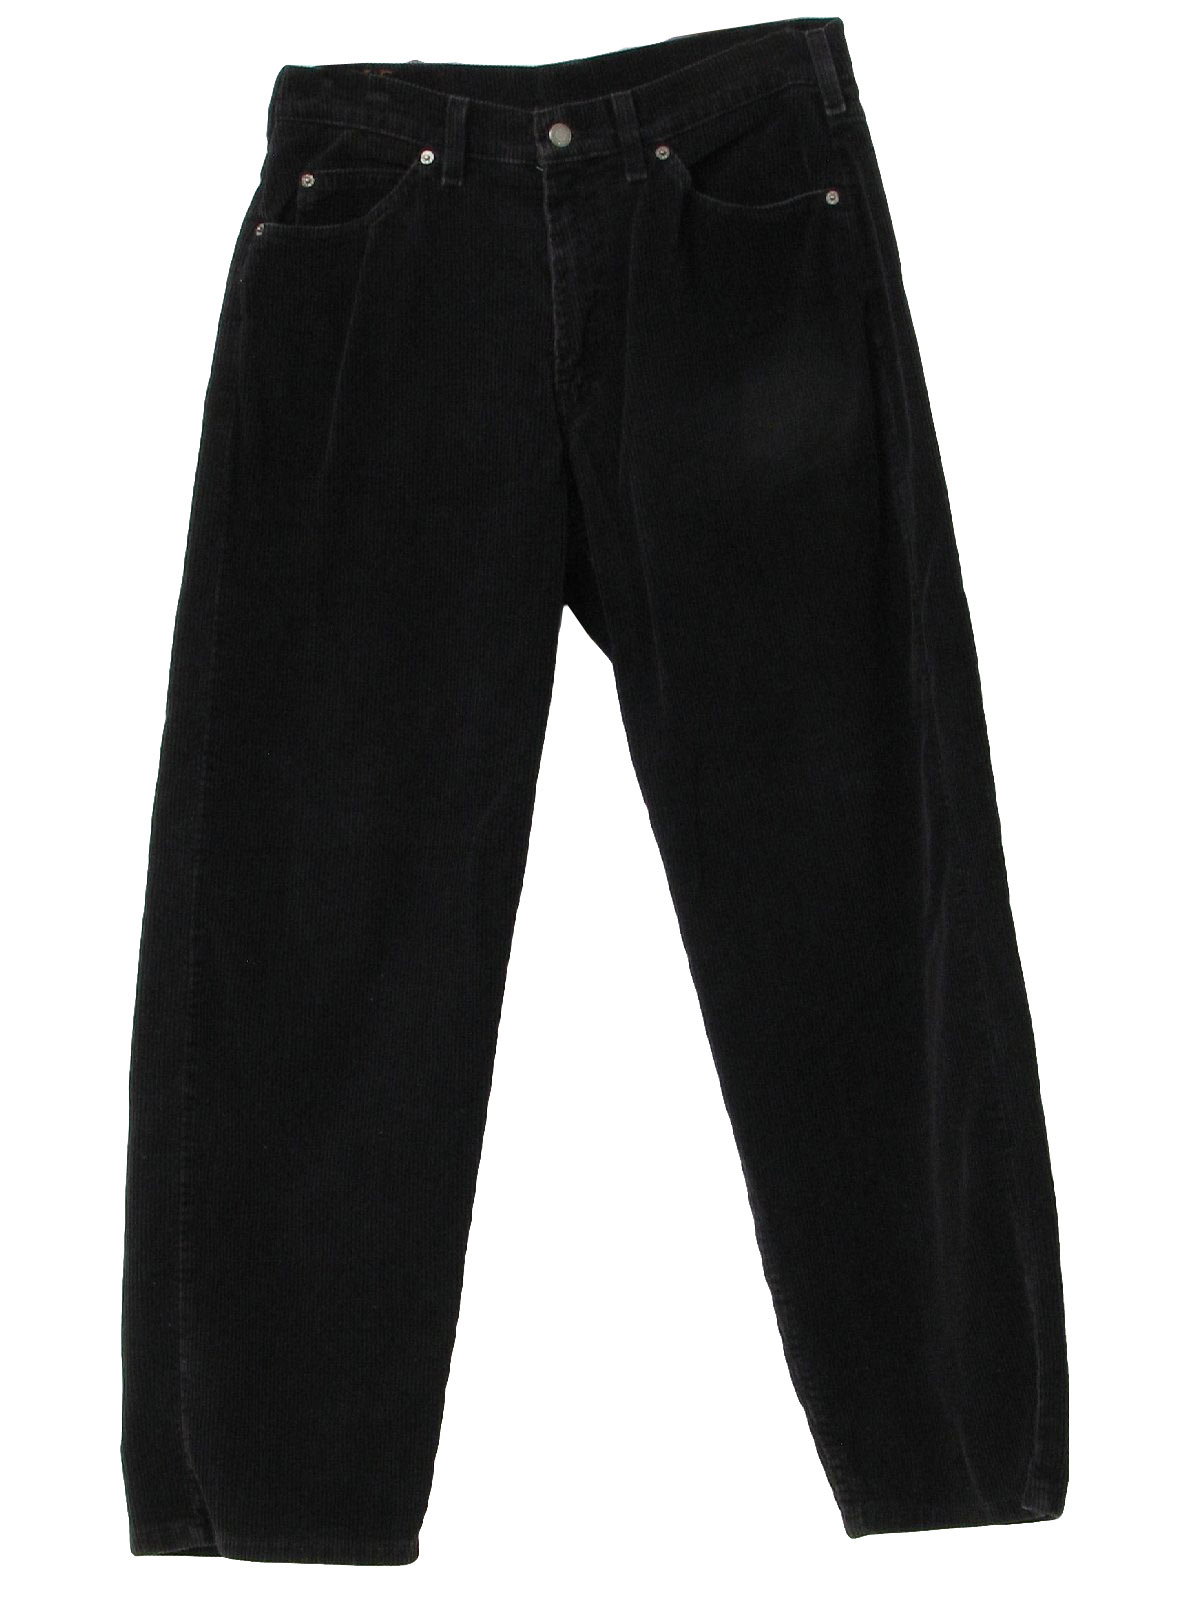 90s Vintage Levis Pants: 90s -Levis- Mens black cotton polyester wide